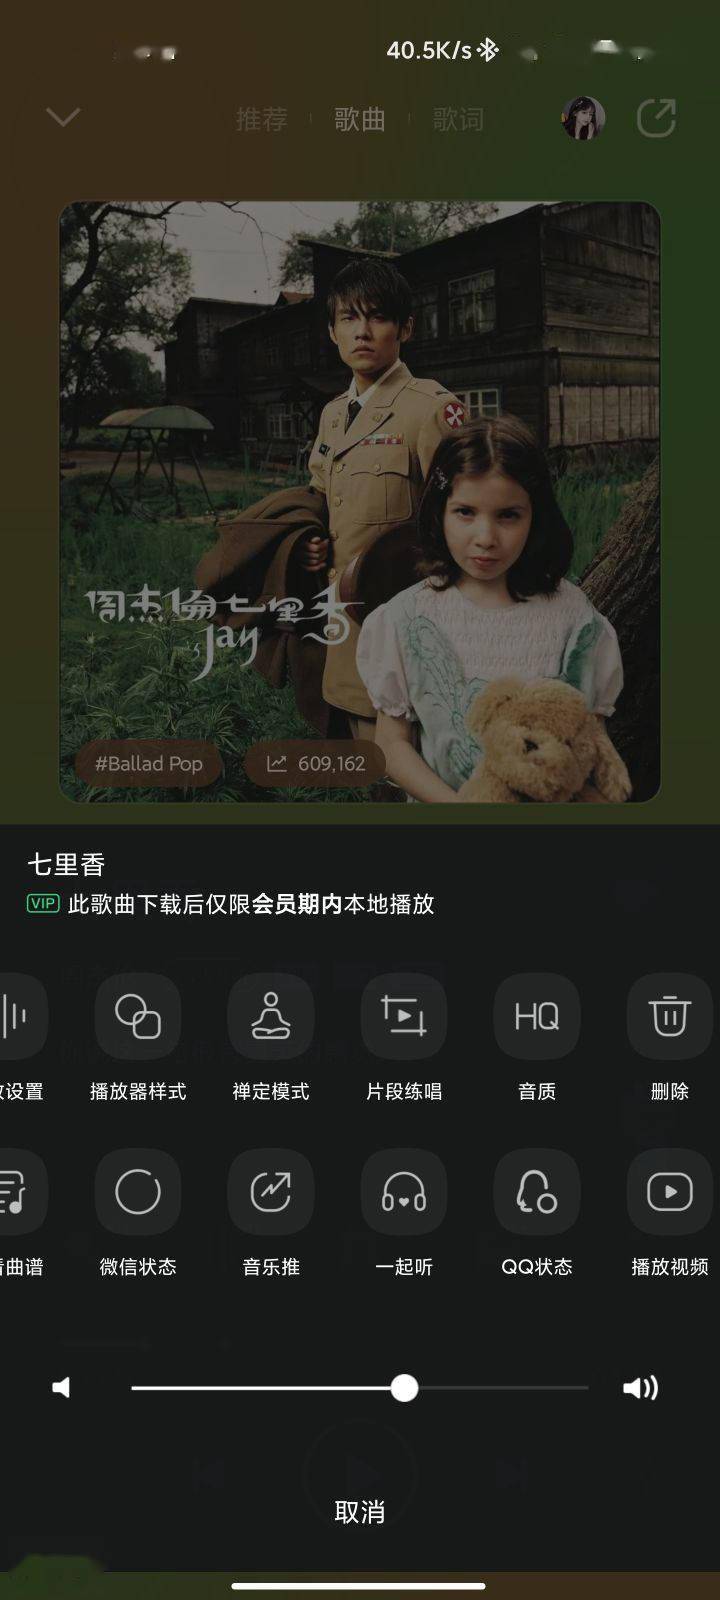 安卓版苹果音乐资料库:腾讯 QQ 音乐 iOS / 安卓版 12.1 发布-第2张图片-太平洋在线下载